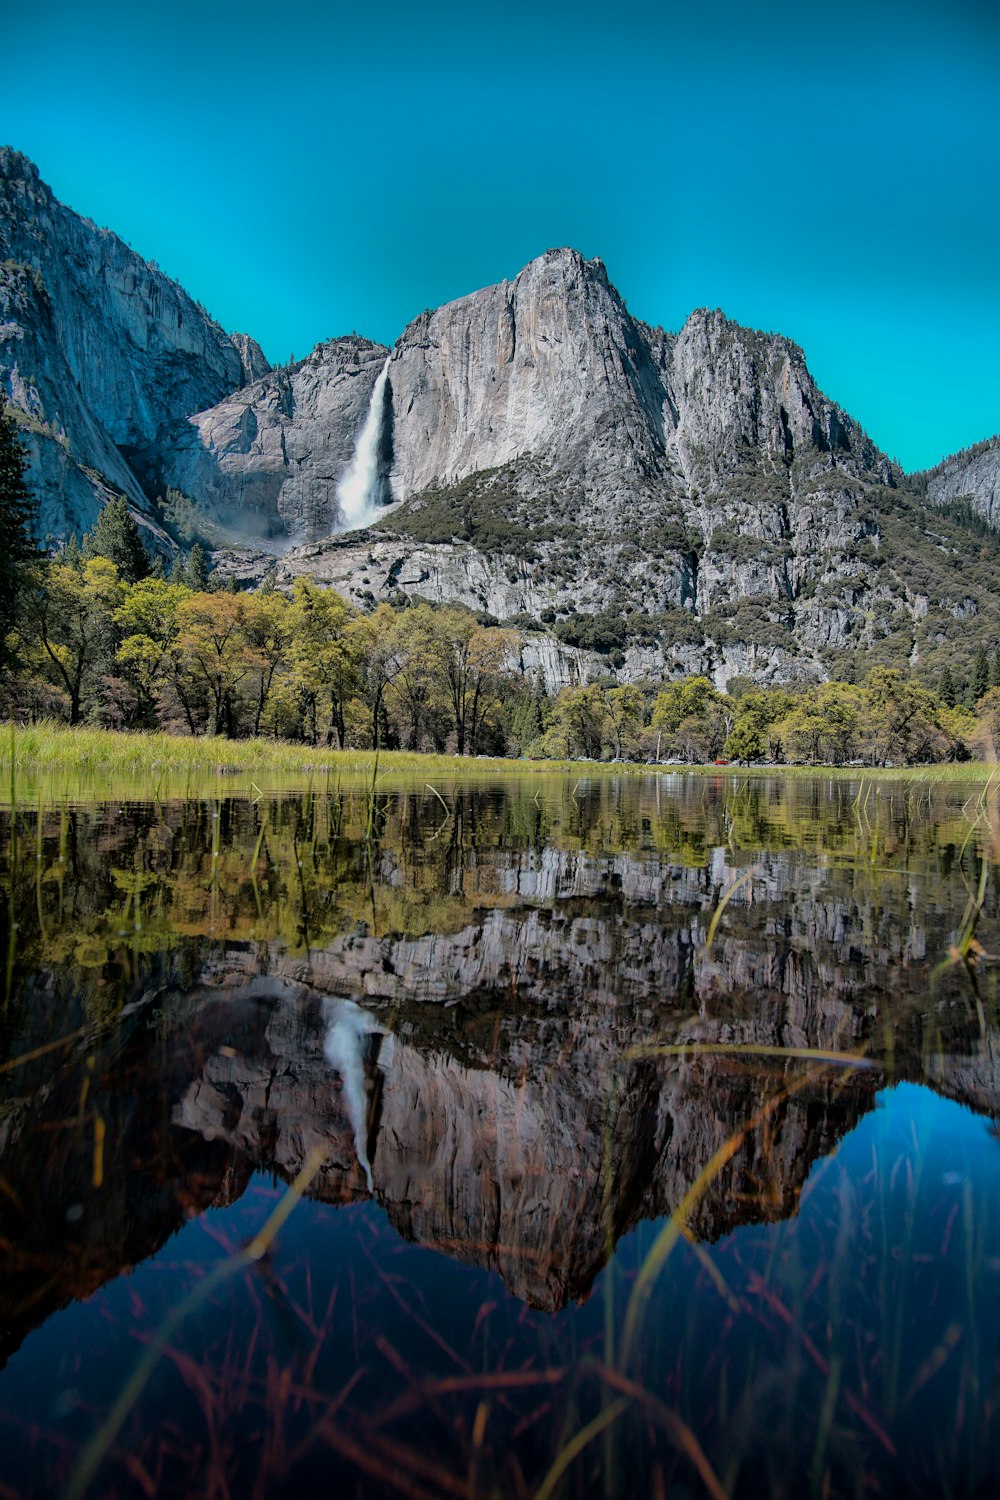 Corpo de água calmo com vista para cachoeiras e montanha de rocha cinza sob o céu azul durante o dia